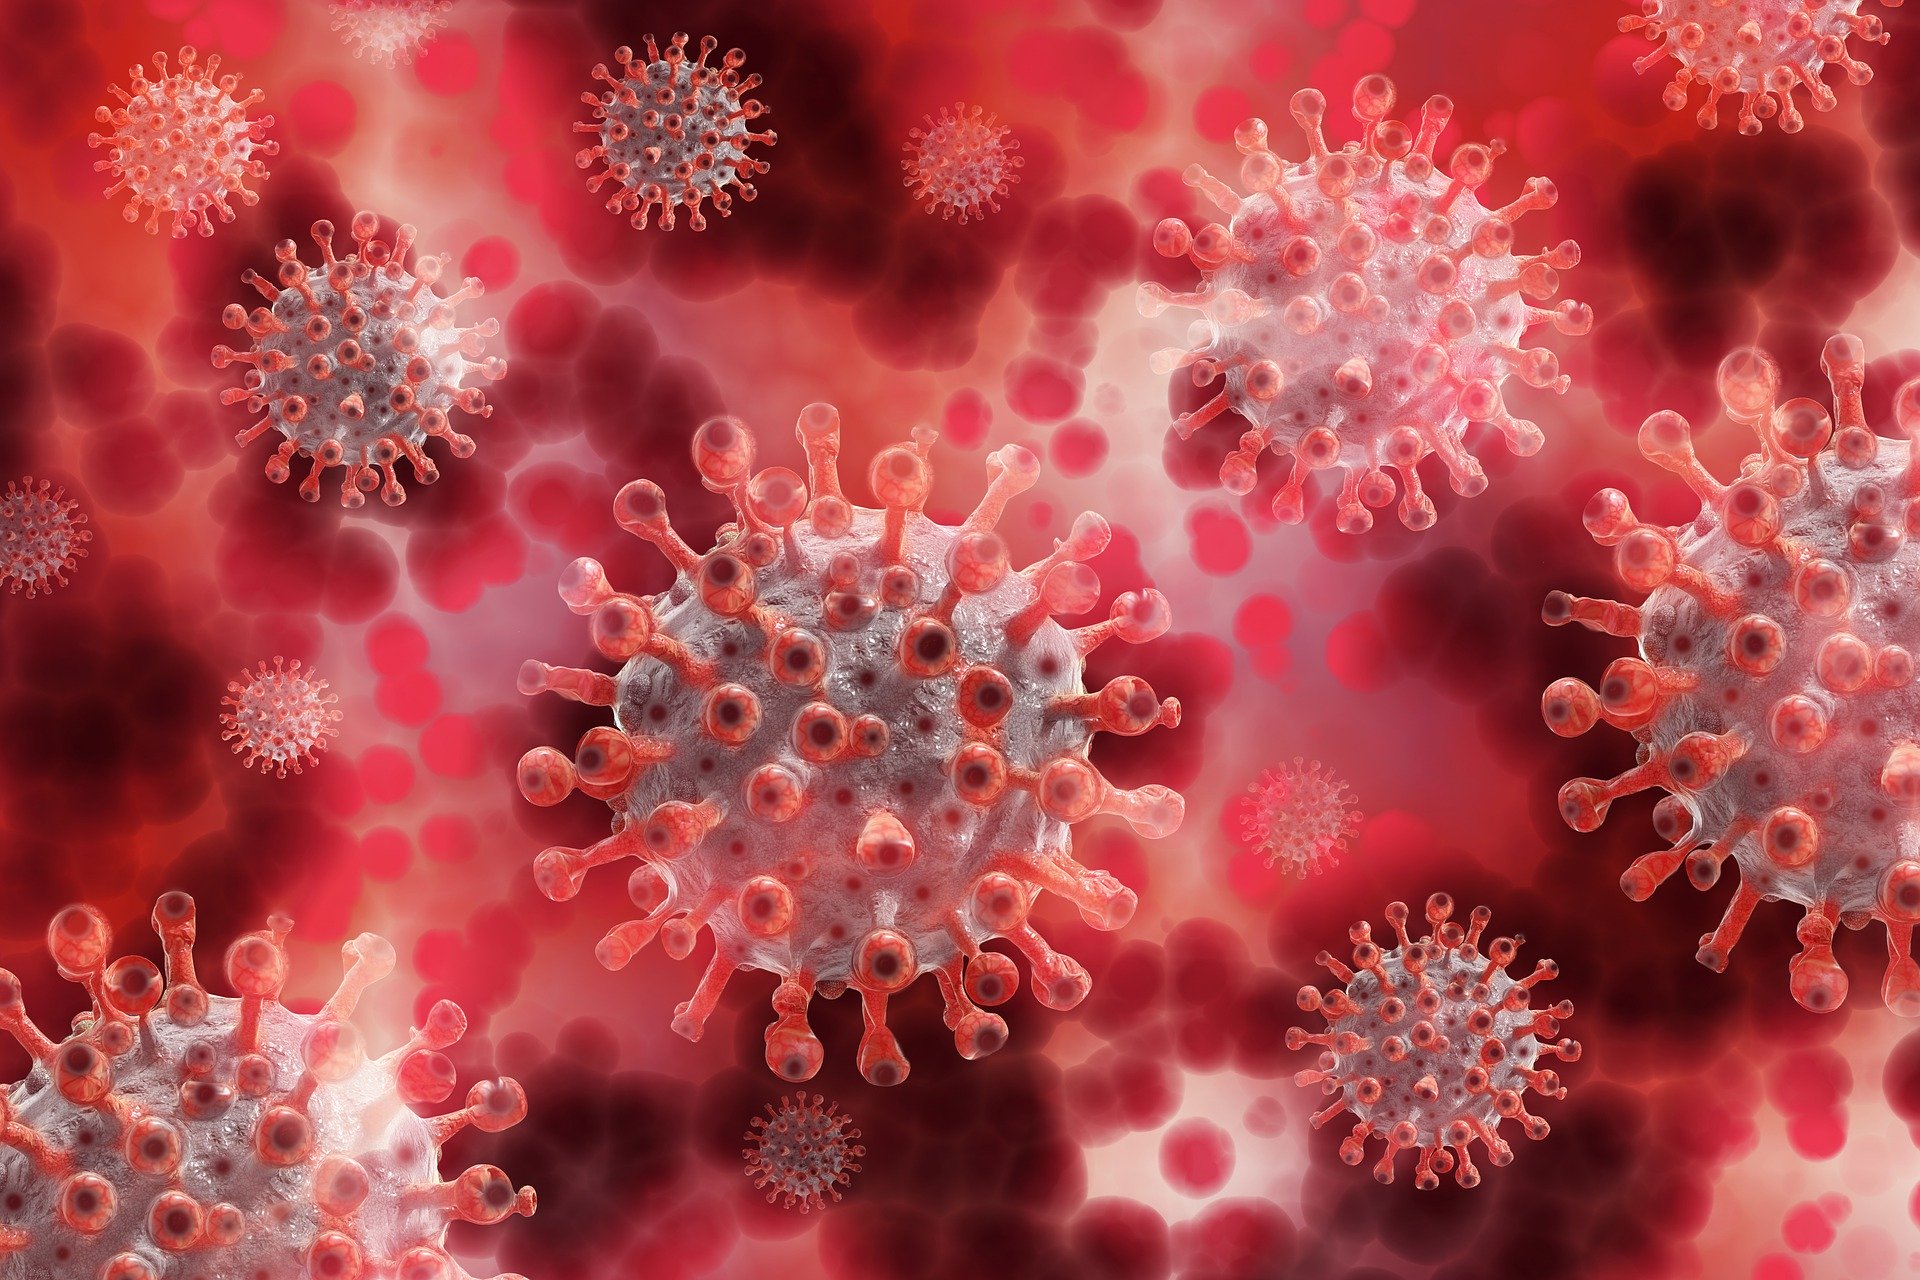 Estudo aponta a circulação do novo coronavírus por até 4 semanas sem ser detectado